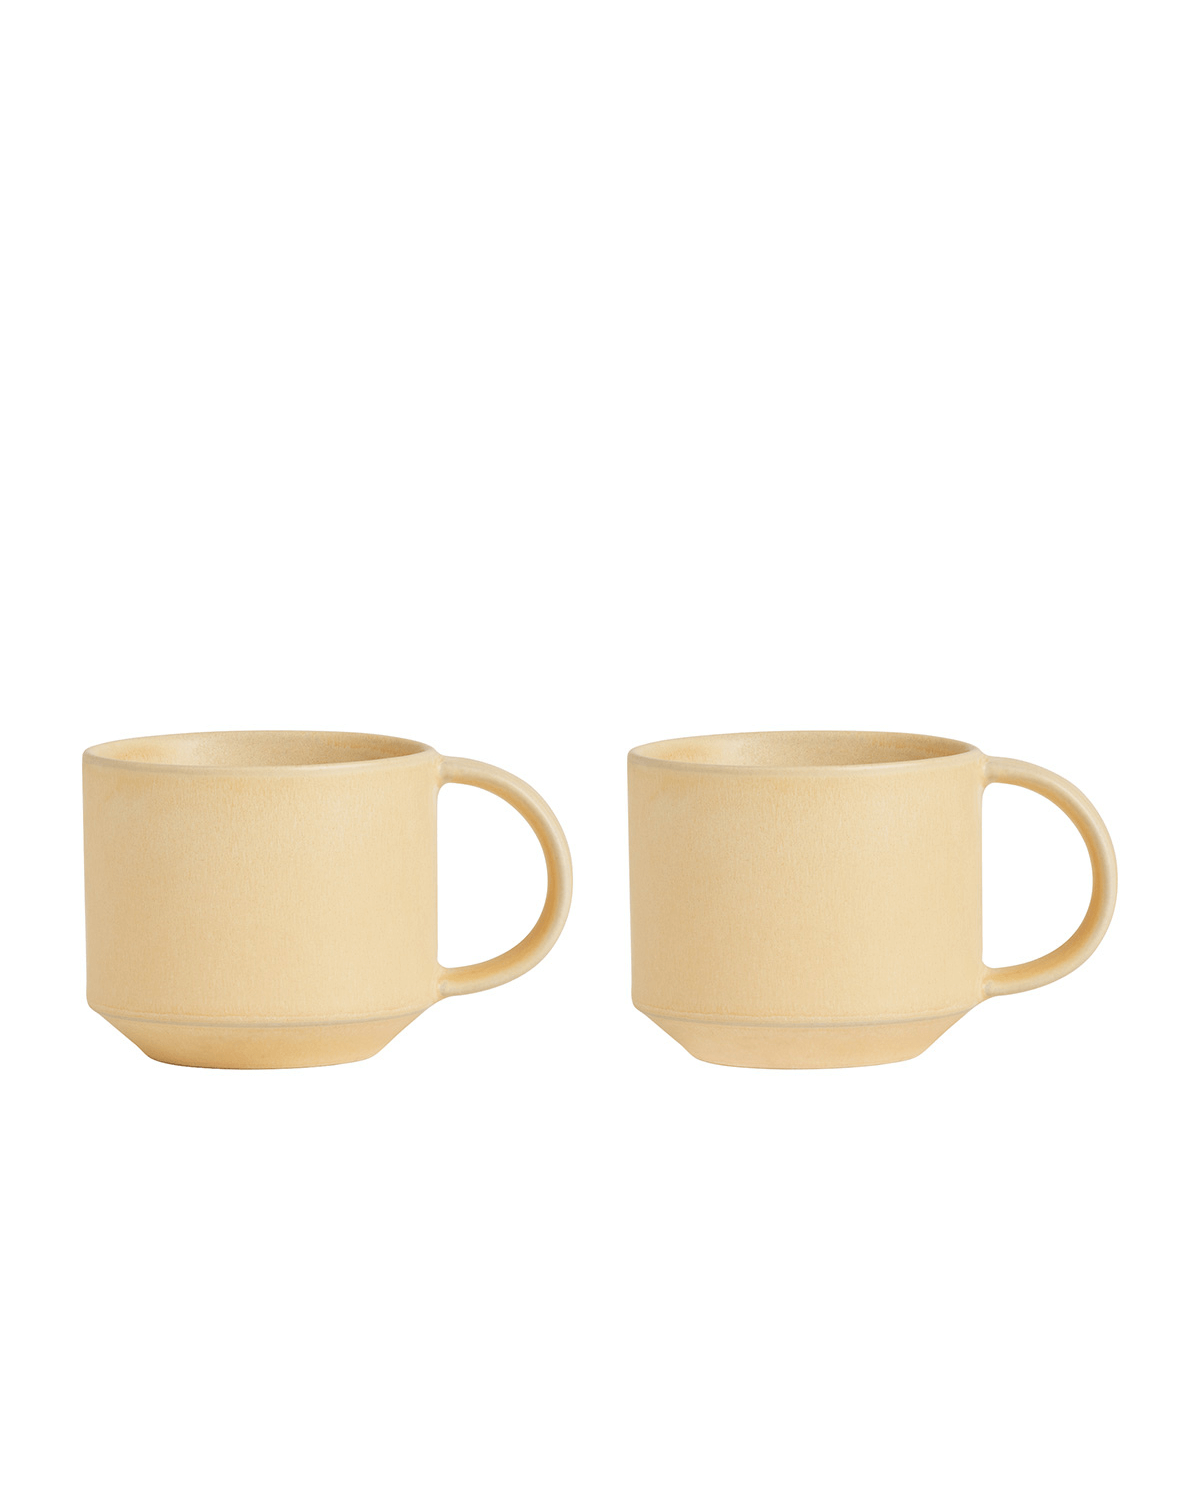 Kop, Keramik kop med hank, gul, Yuka, OYOY Living Design